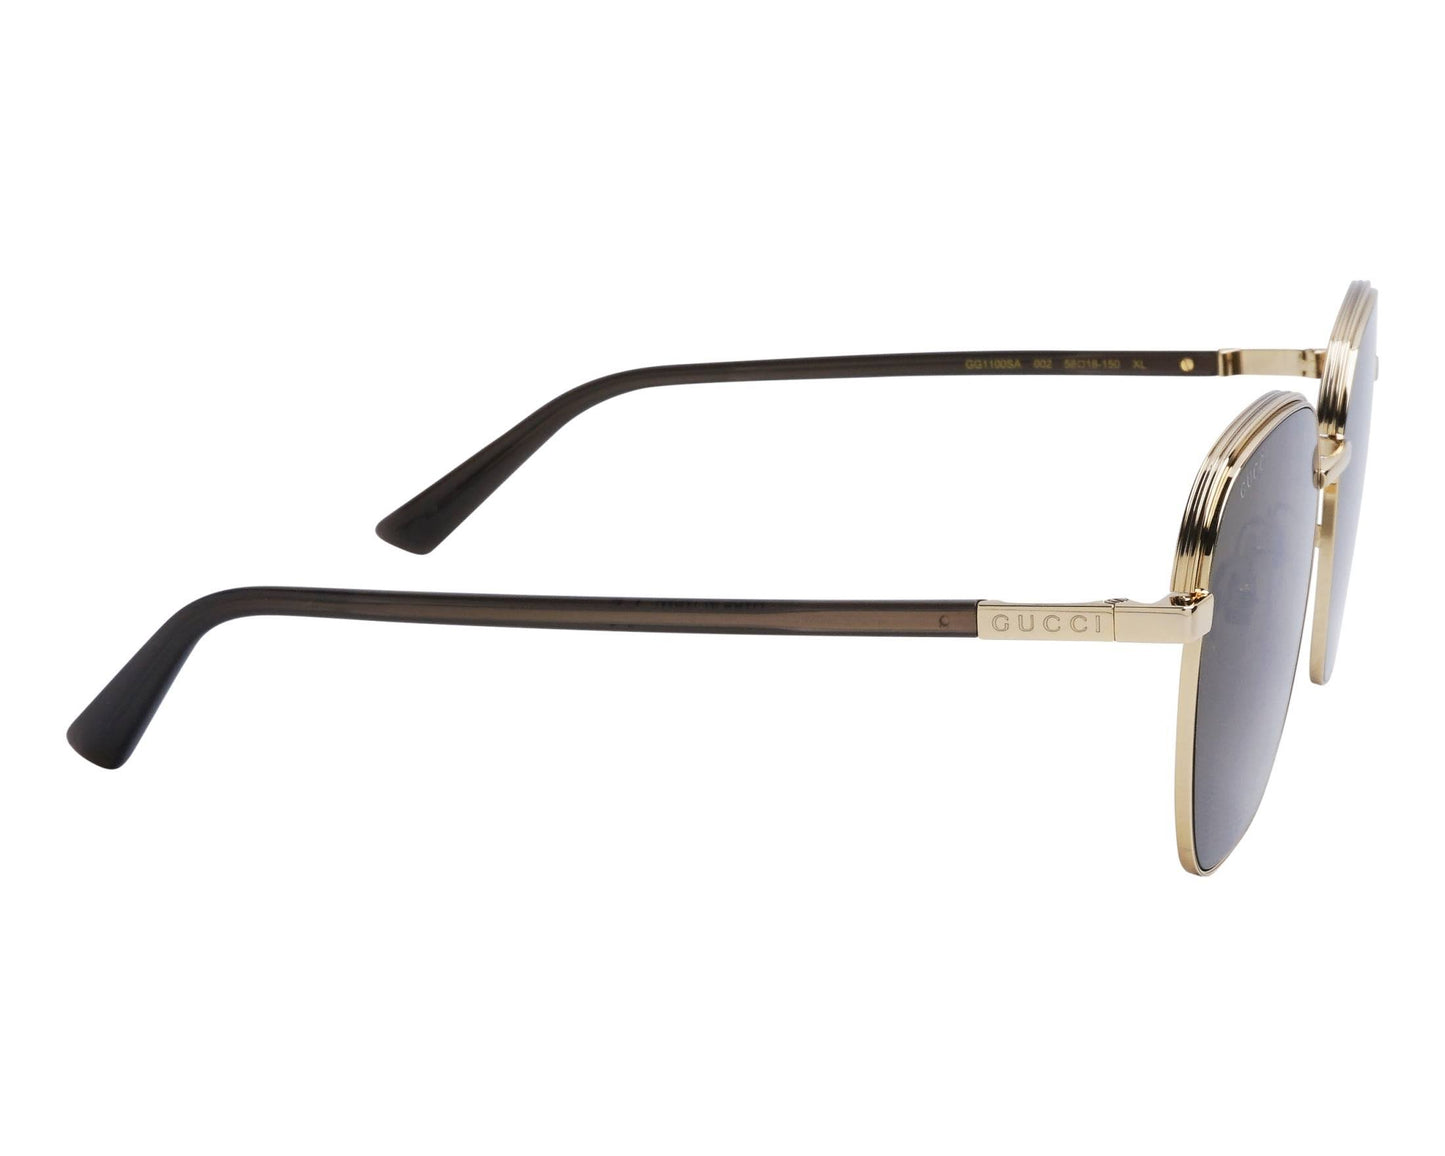 Gucci GG1100SA-002-58 58mm New Sunglasses